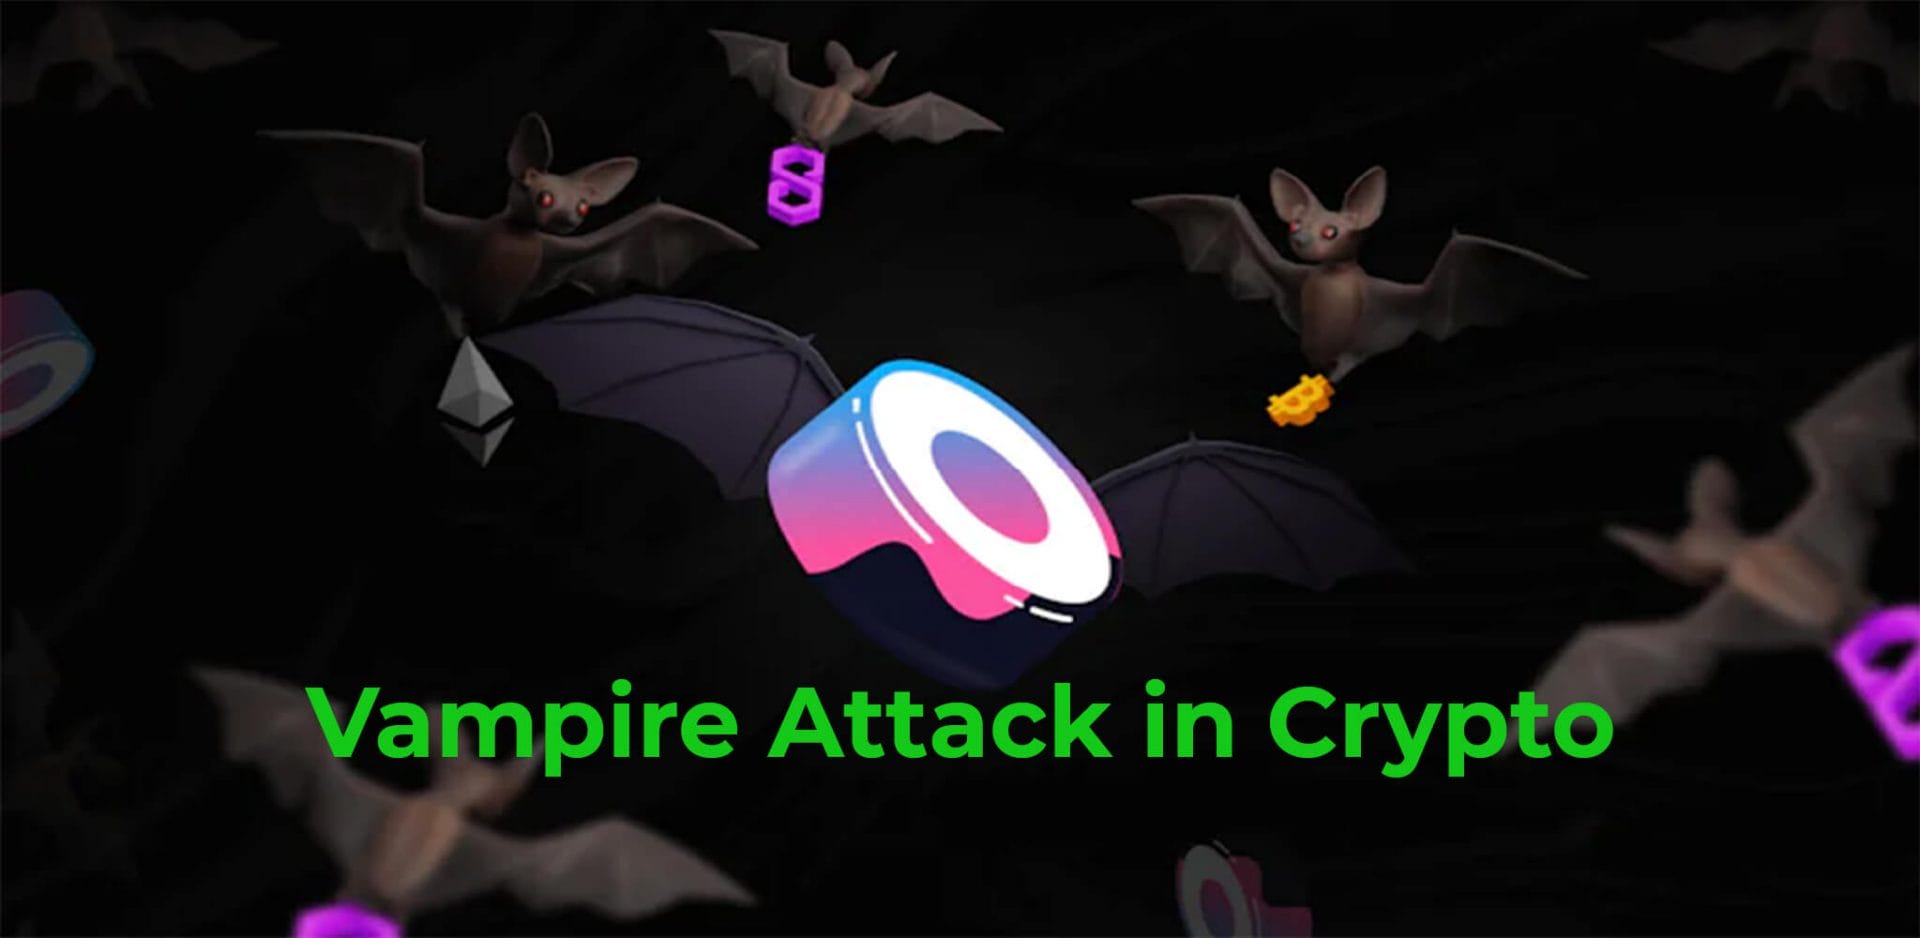 Vampire Attack Explained